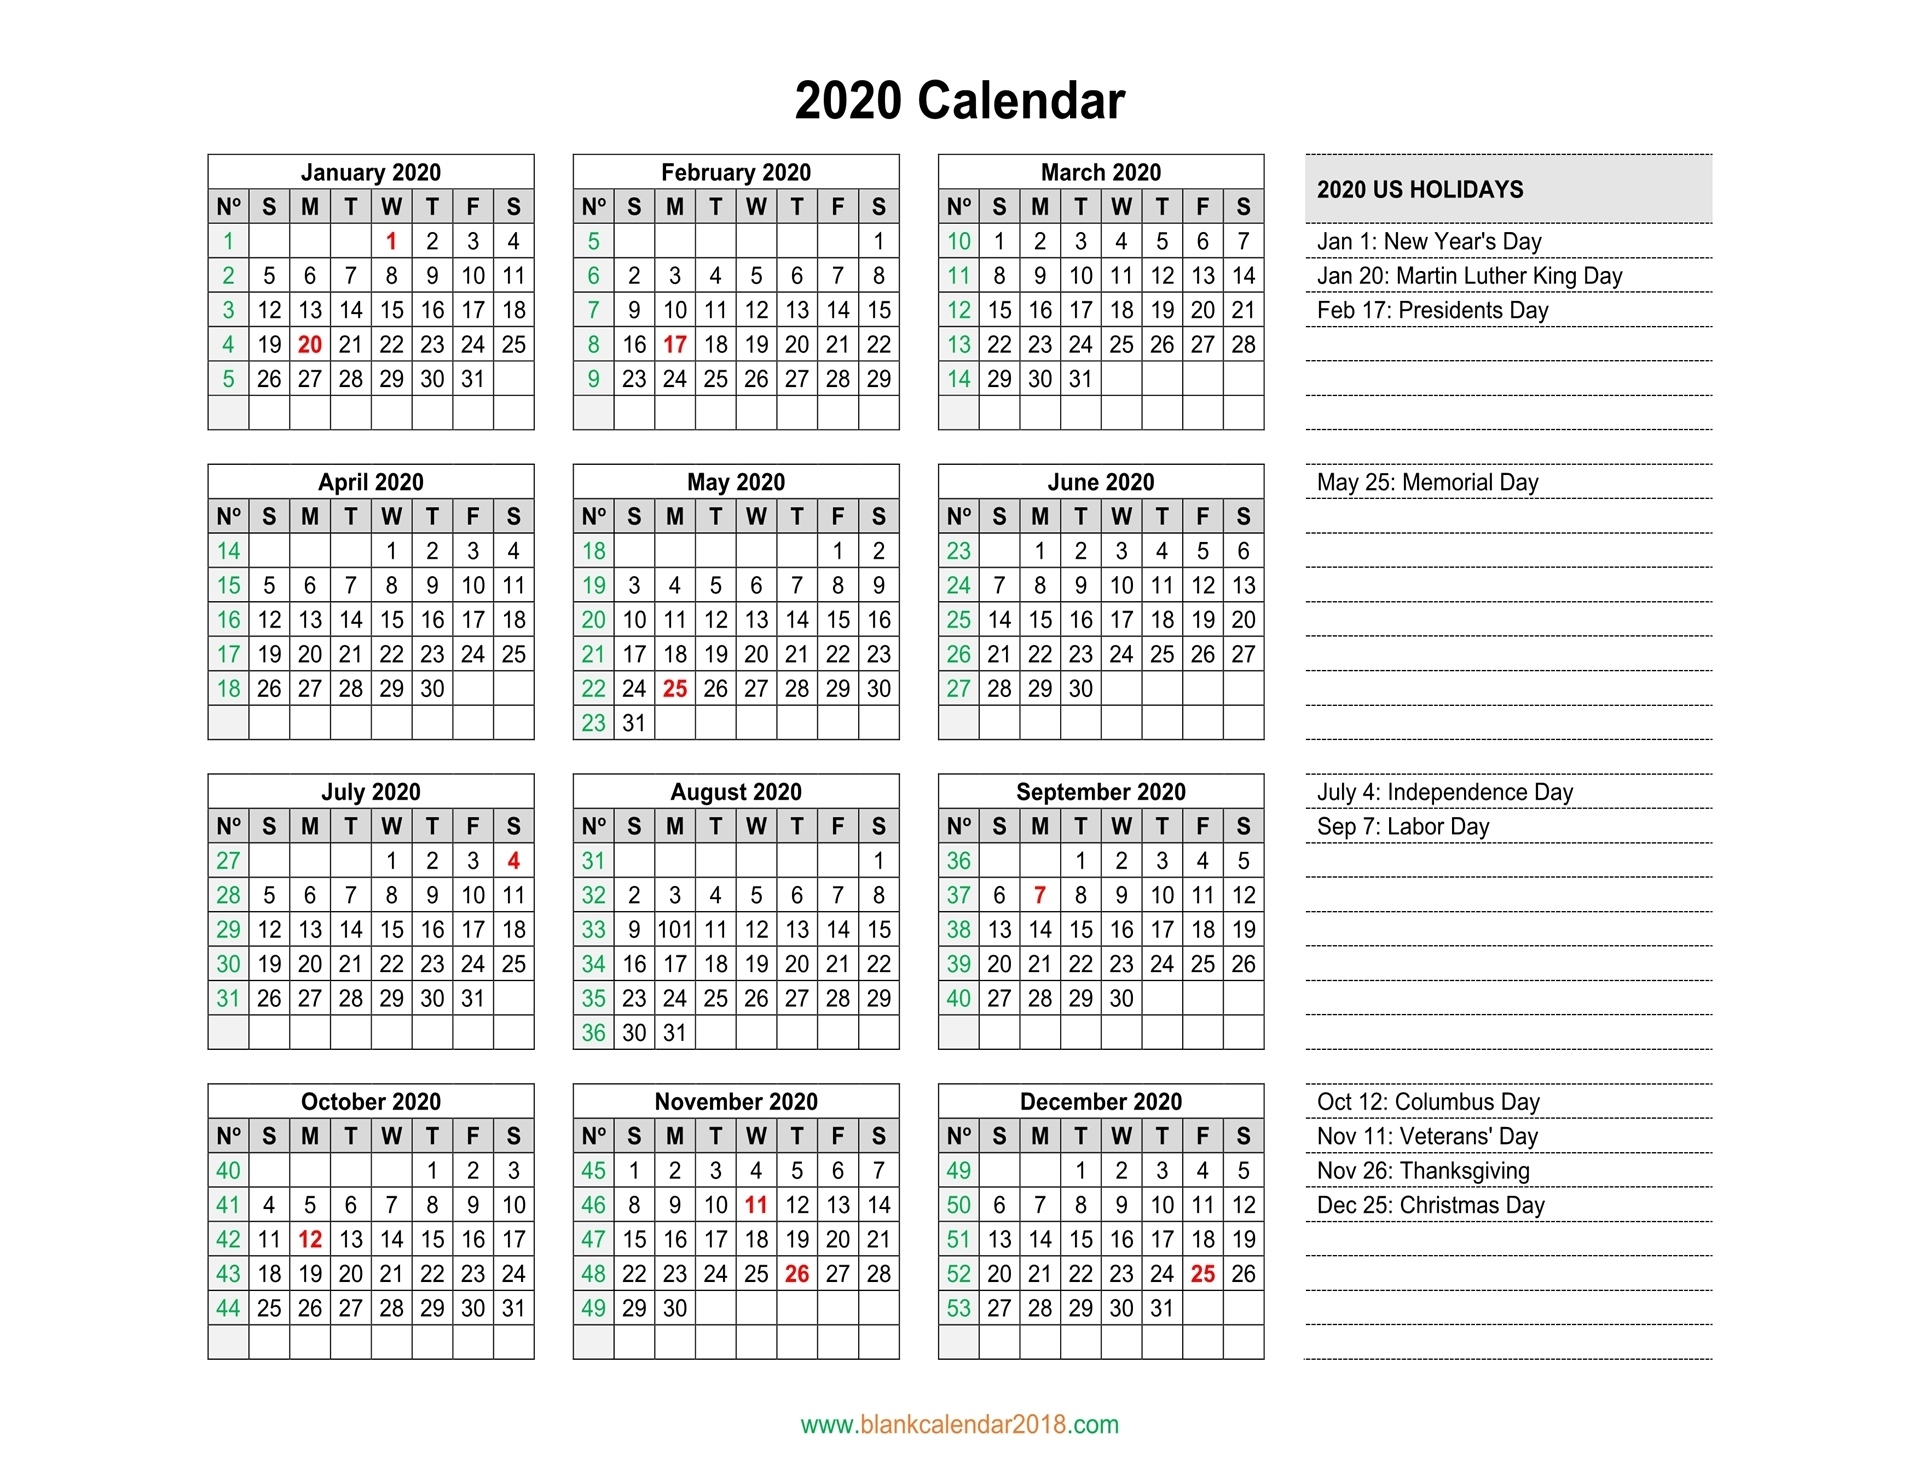 Blank Calendar 2020 2020 Calendar Printable With Holidays